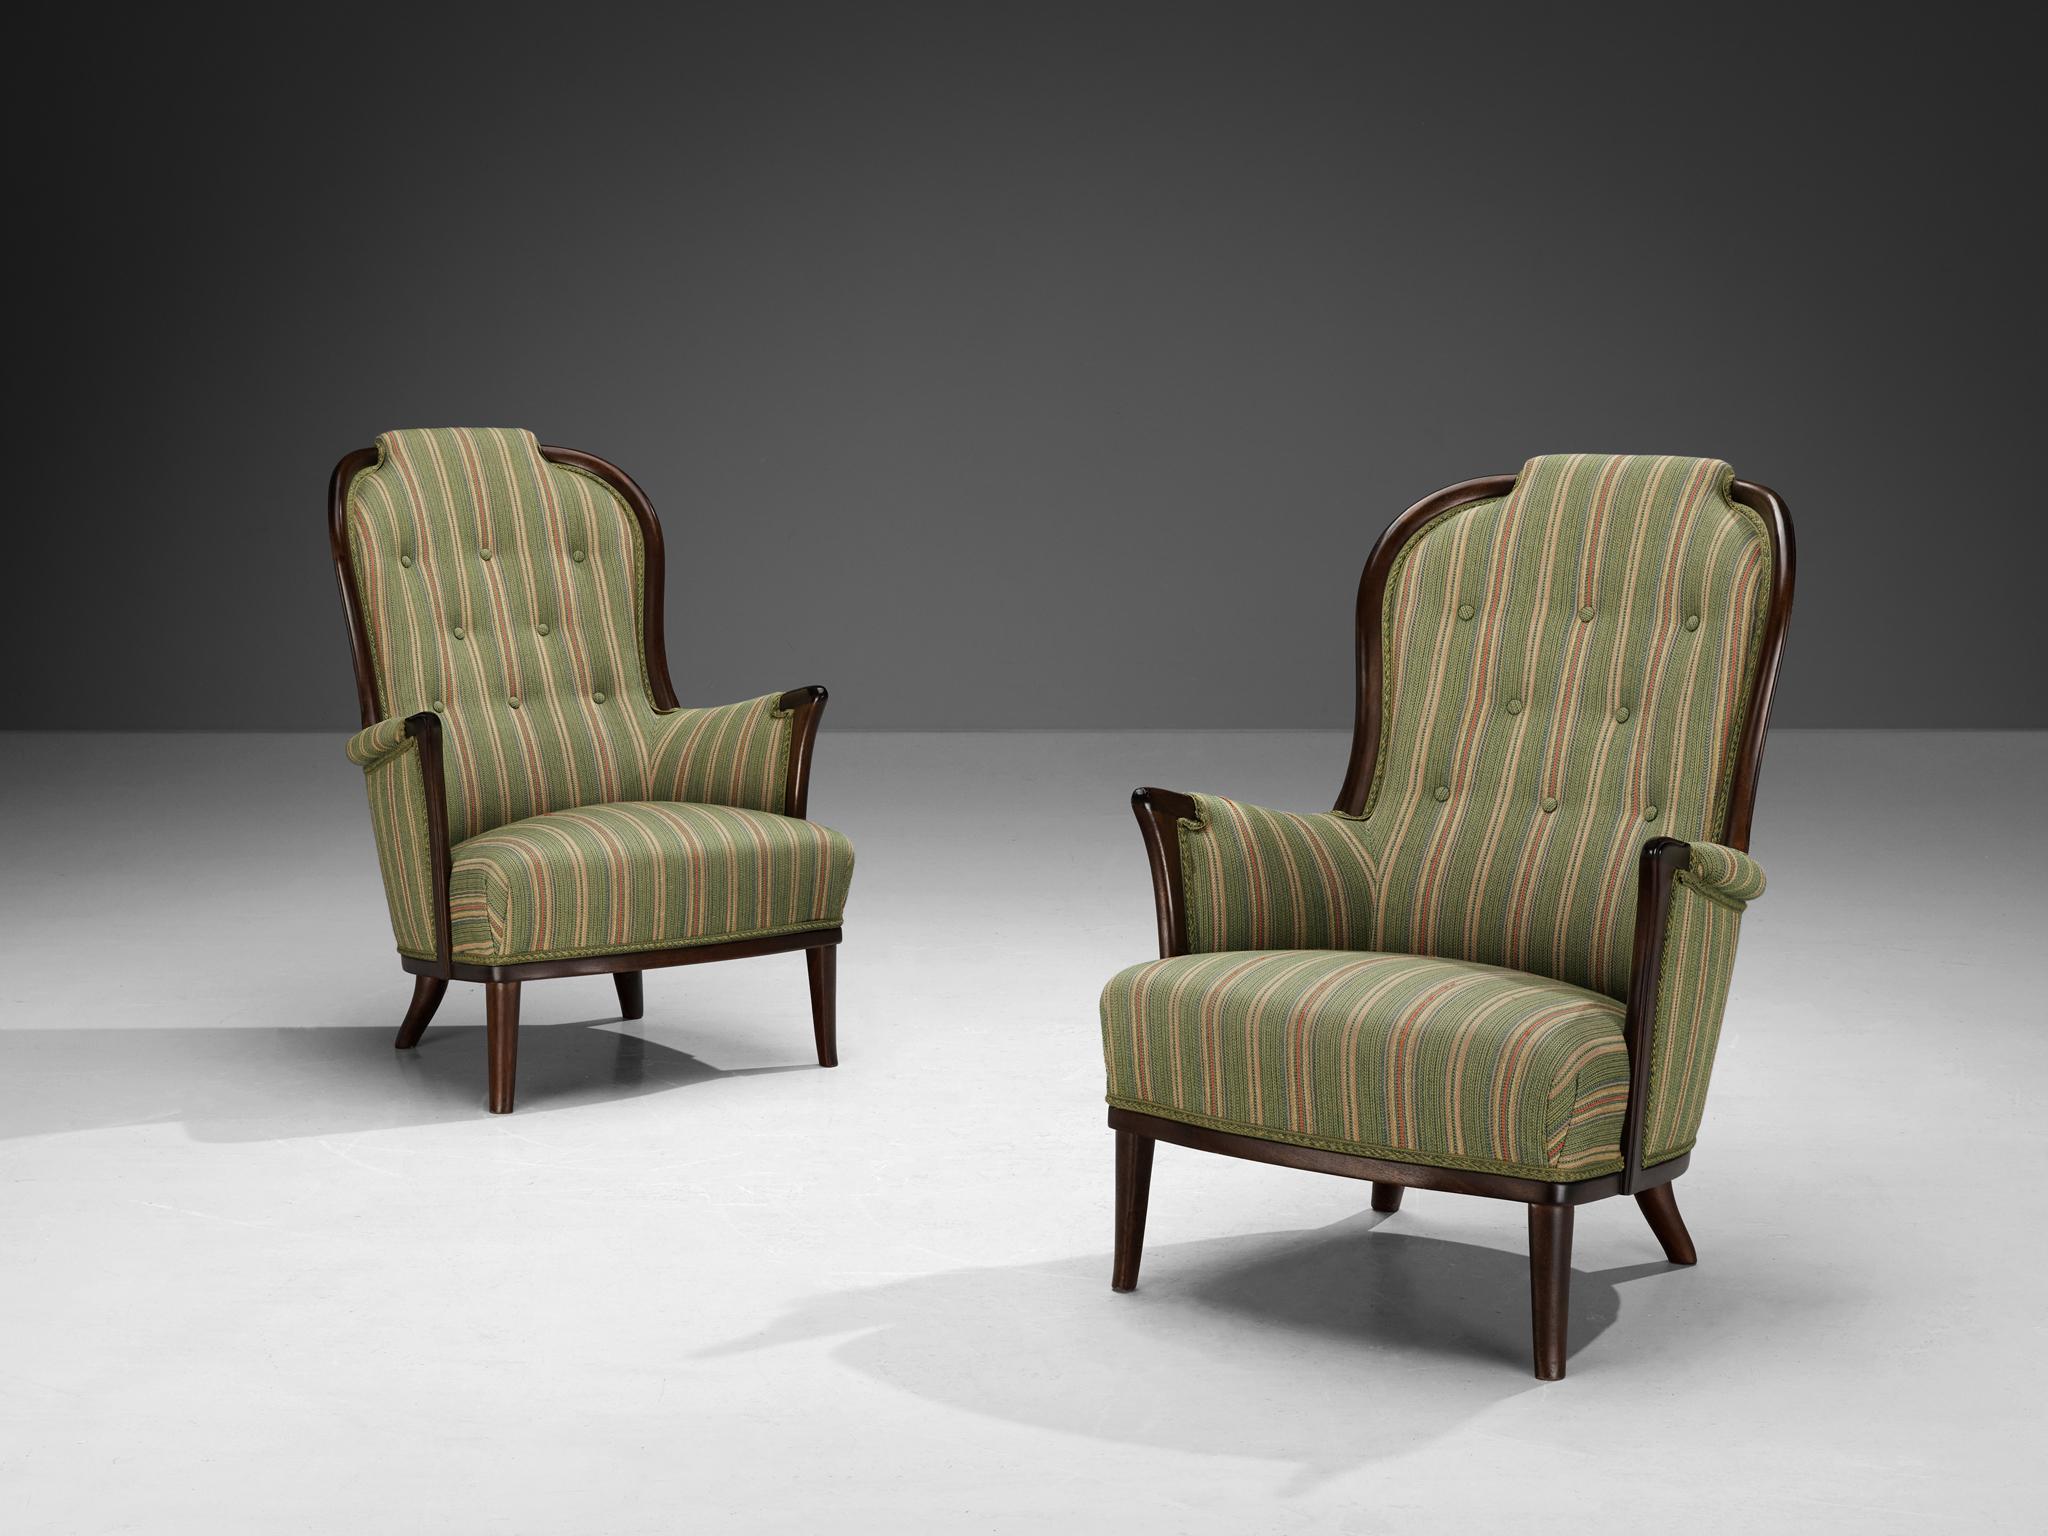 Carl Malmsten pour AB O.H. Sjögren, paire de fauteuils, tissu, acajou, Tranås, Suède, 1987

Paire de magnifiques chaises très bien conçues par Carl Malmsten. Les fauteuils sont tapissés dans le tissu d'origine, principalement dans la couleur verte